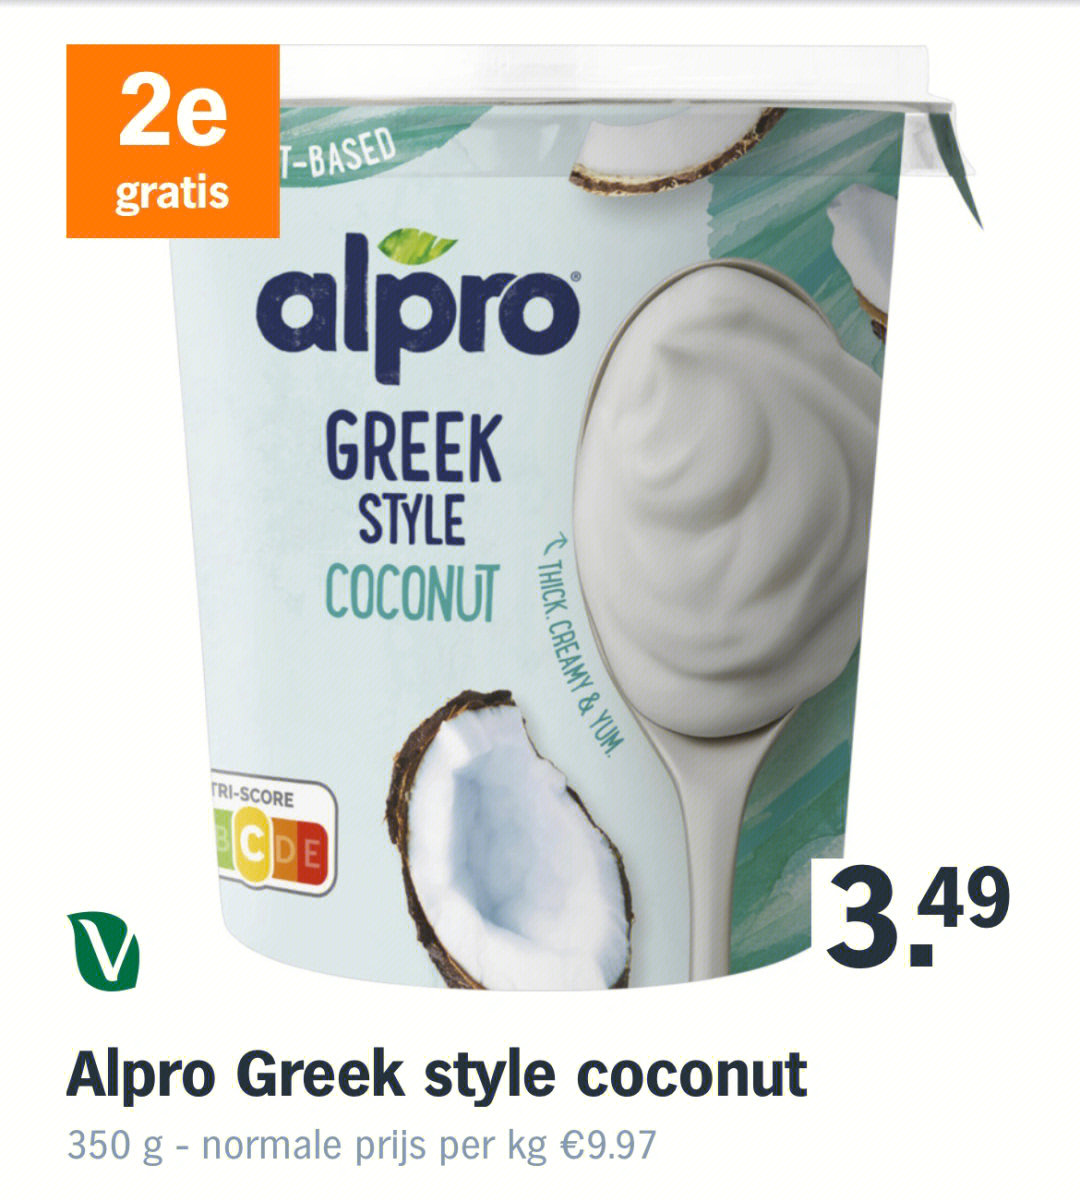 alpro椰子酸奶拿来做隔夜燕麦太赞了